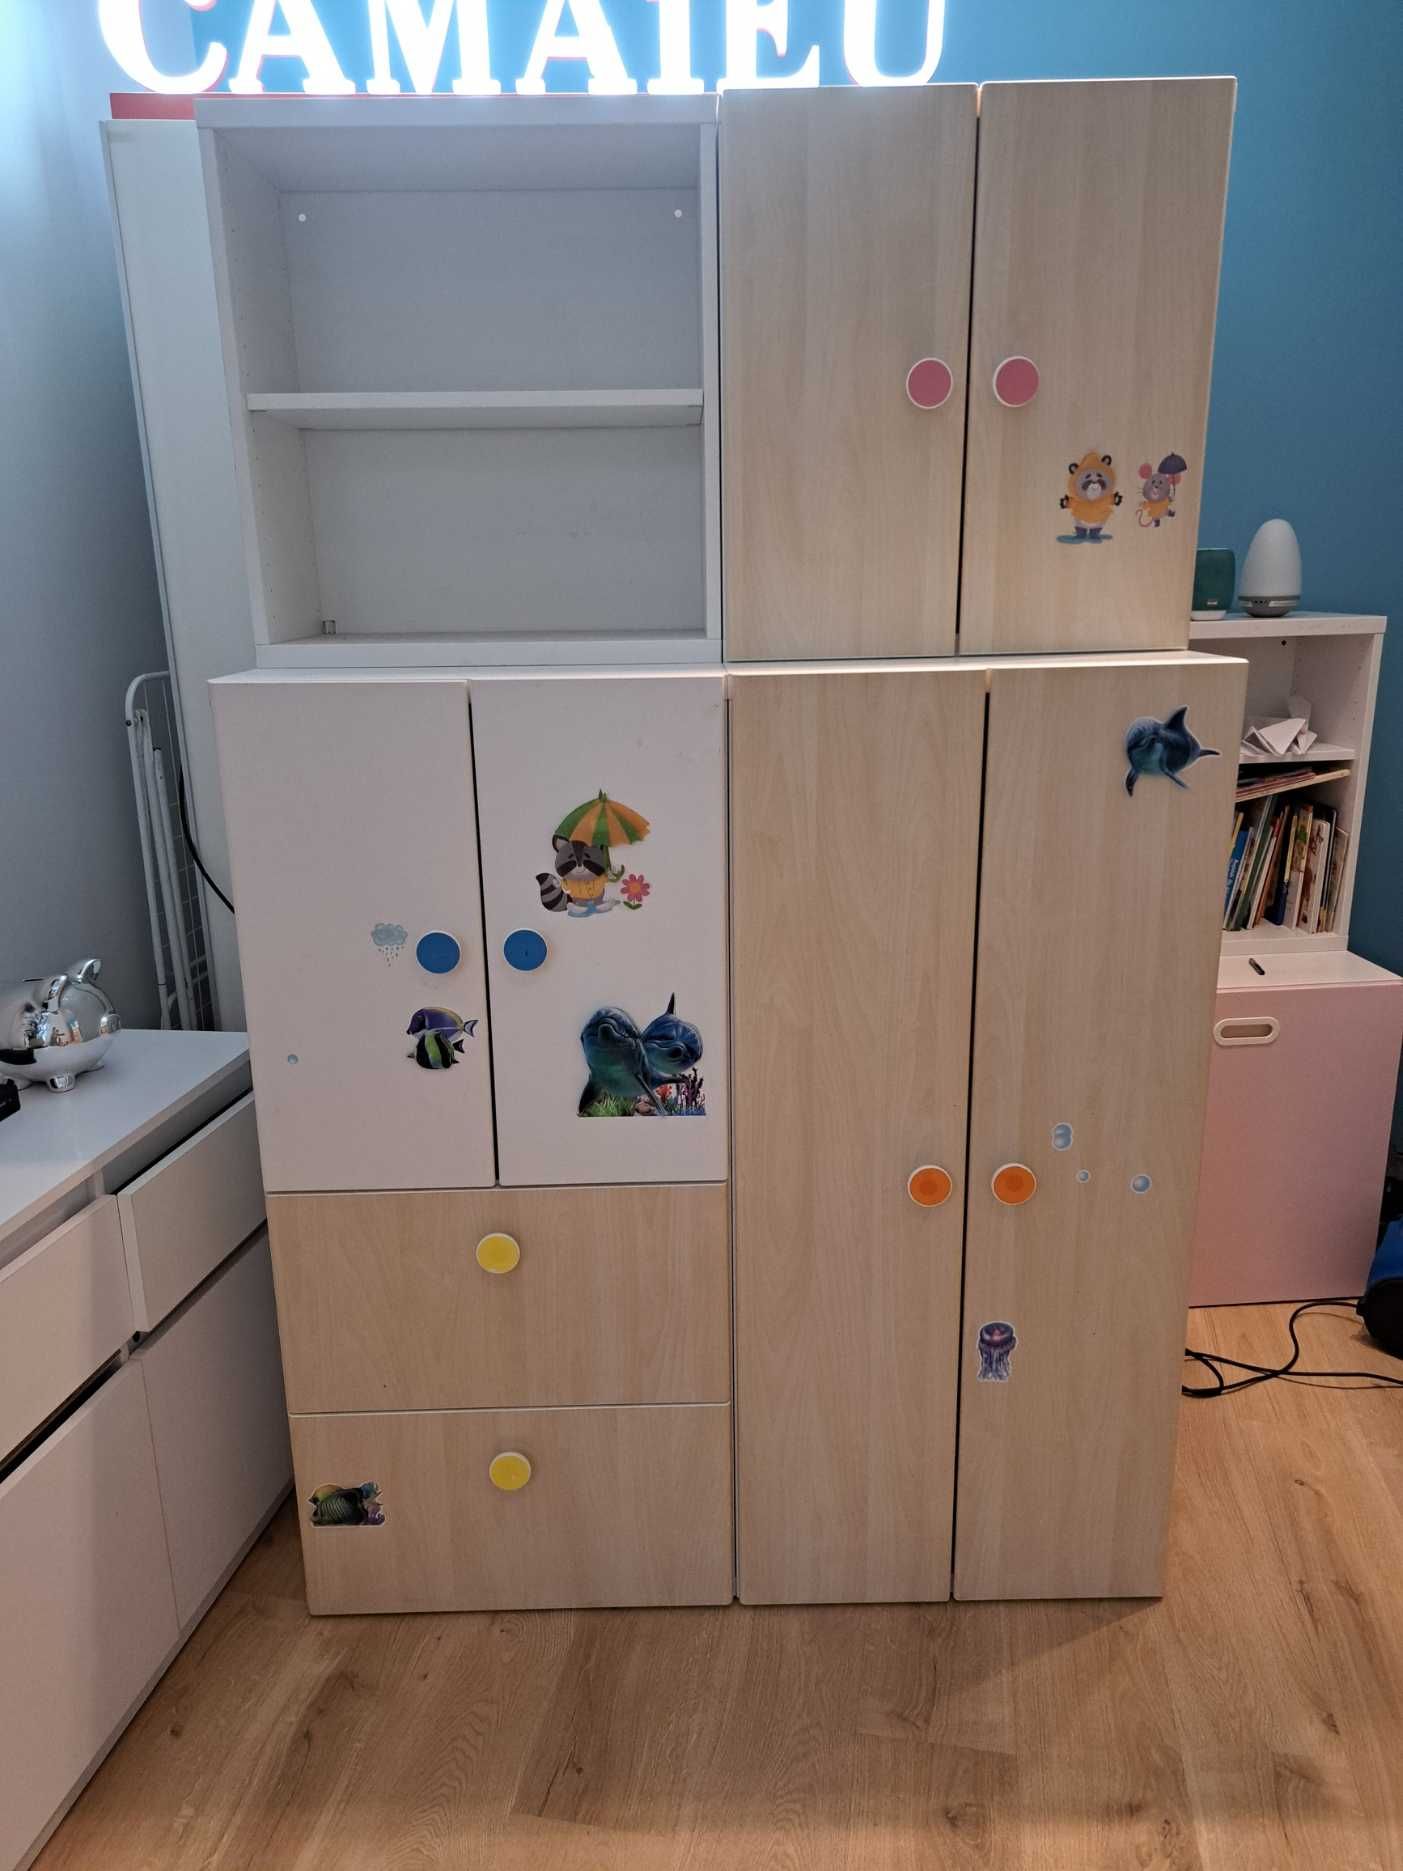 Meble dziecięce IKEA STUVA szafki nadstawki szafa z drążkami i półkami